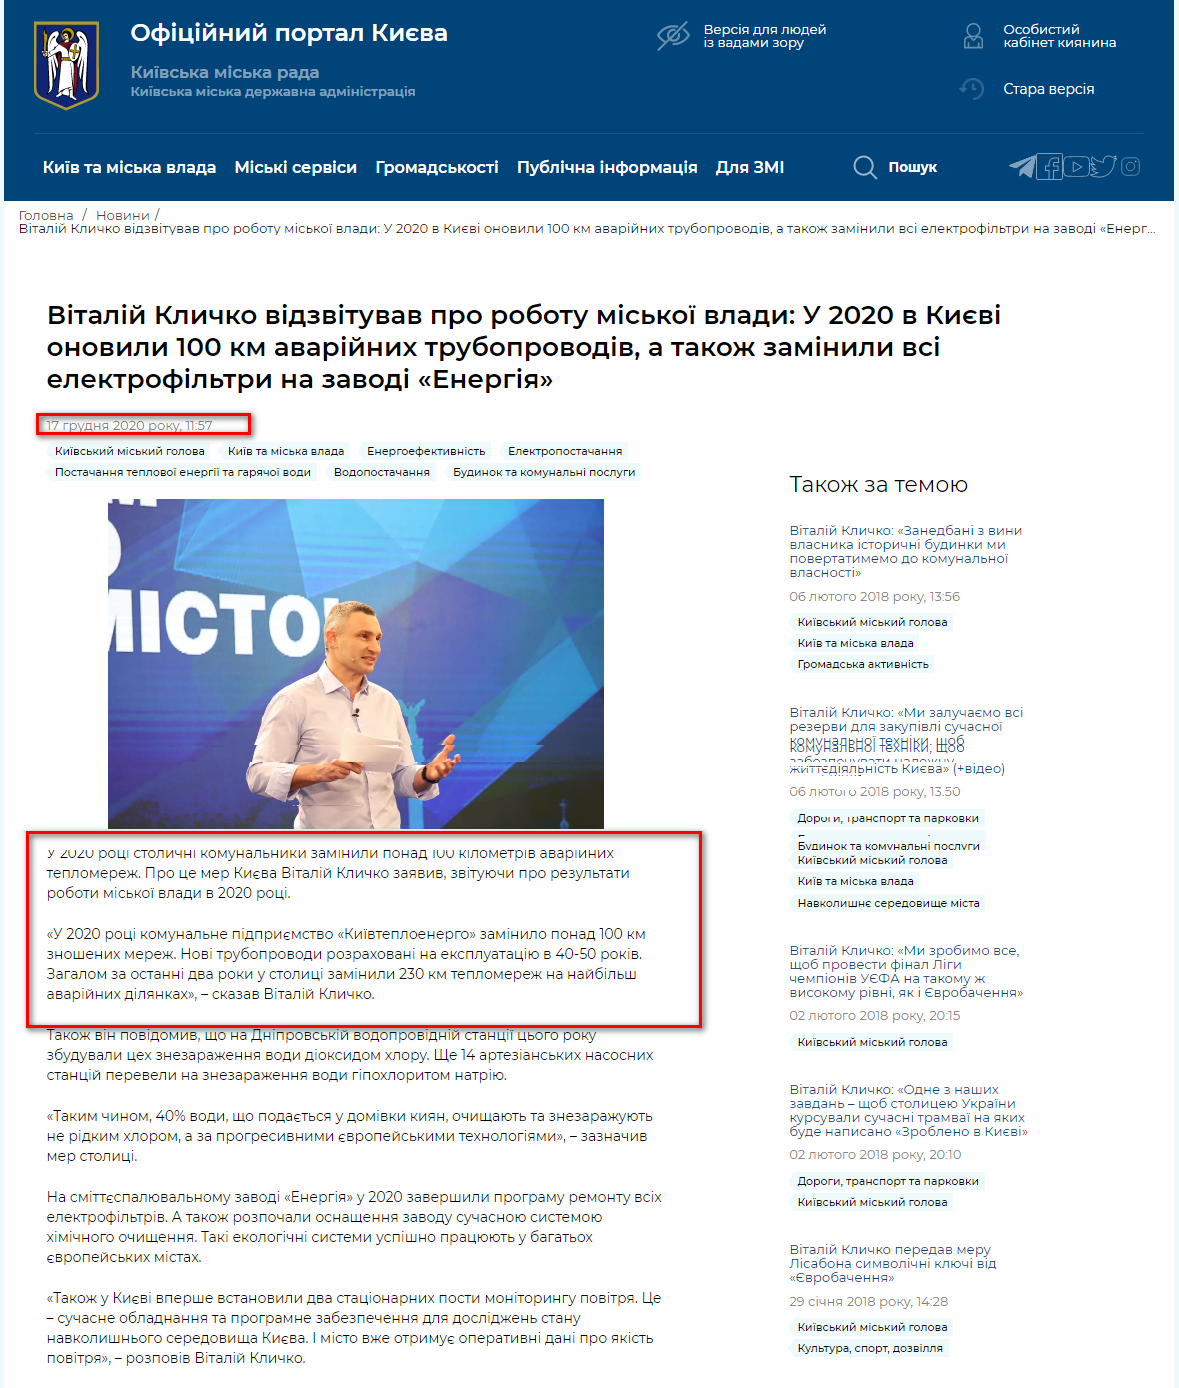 17 грудня 2020 року у своєму річному звіті Віталій Кличко розповів, що у поточному році комунальне підприємство «Київтеплоенерго» замінило понад 100 км зношених мереж. Таким чином обіцянка отримує статус - виконано.